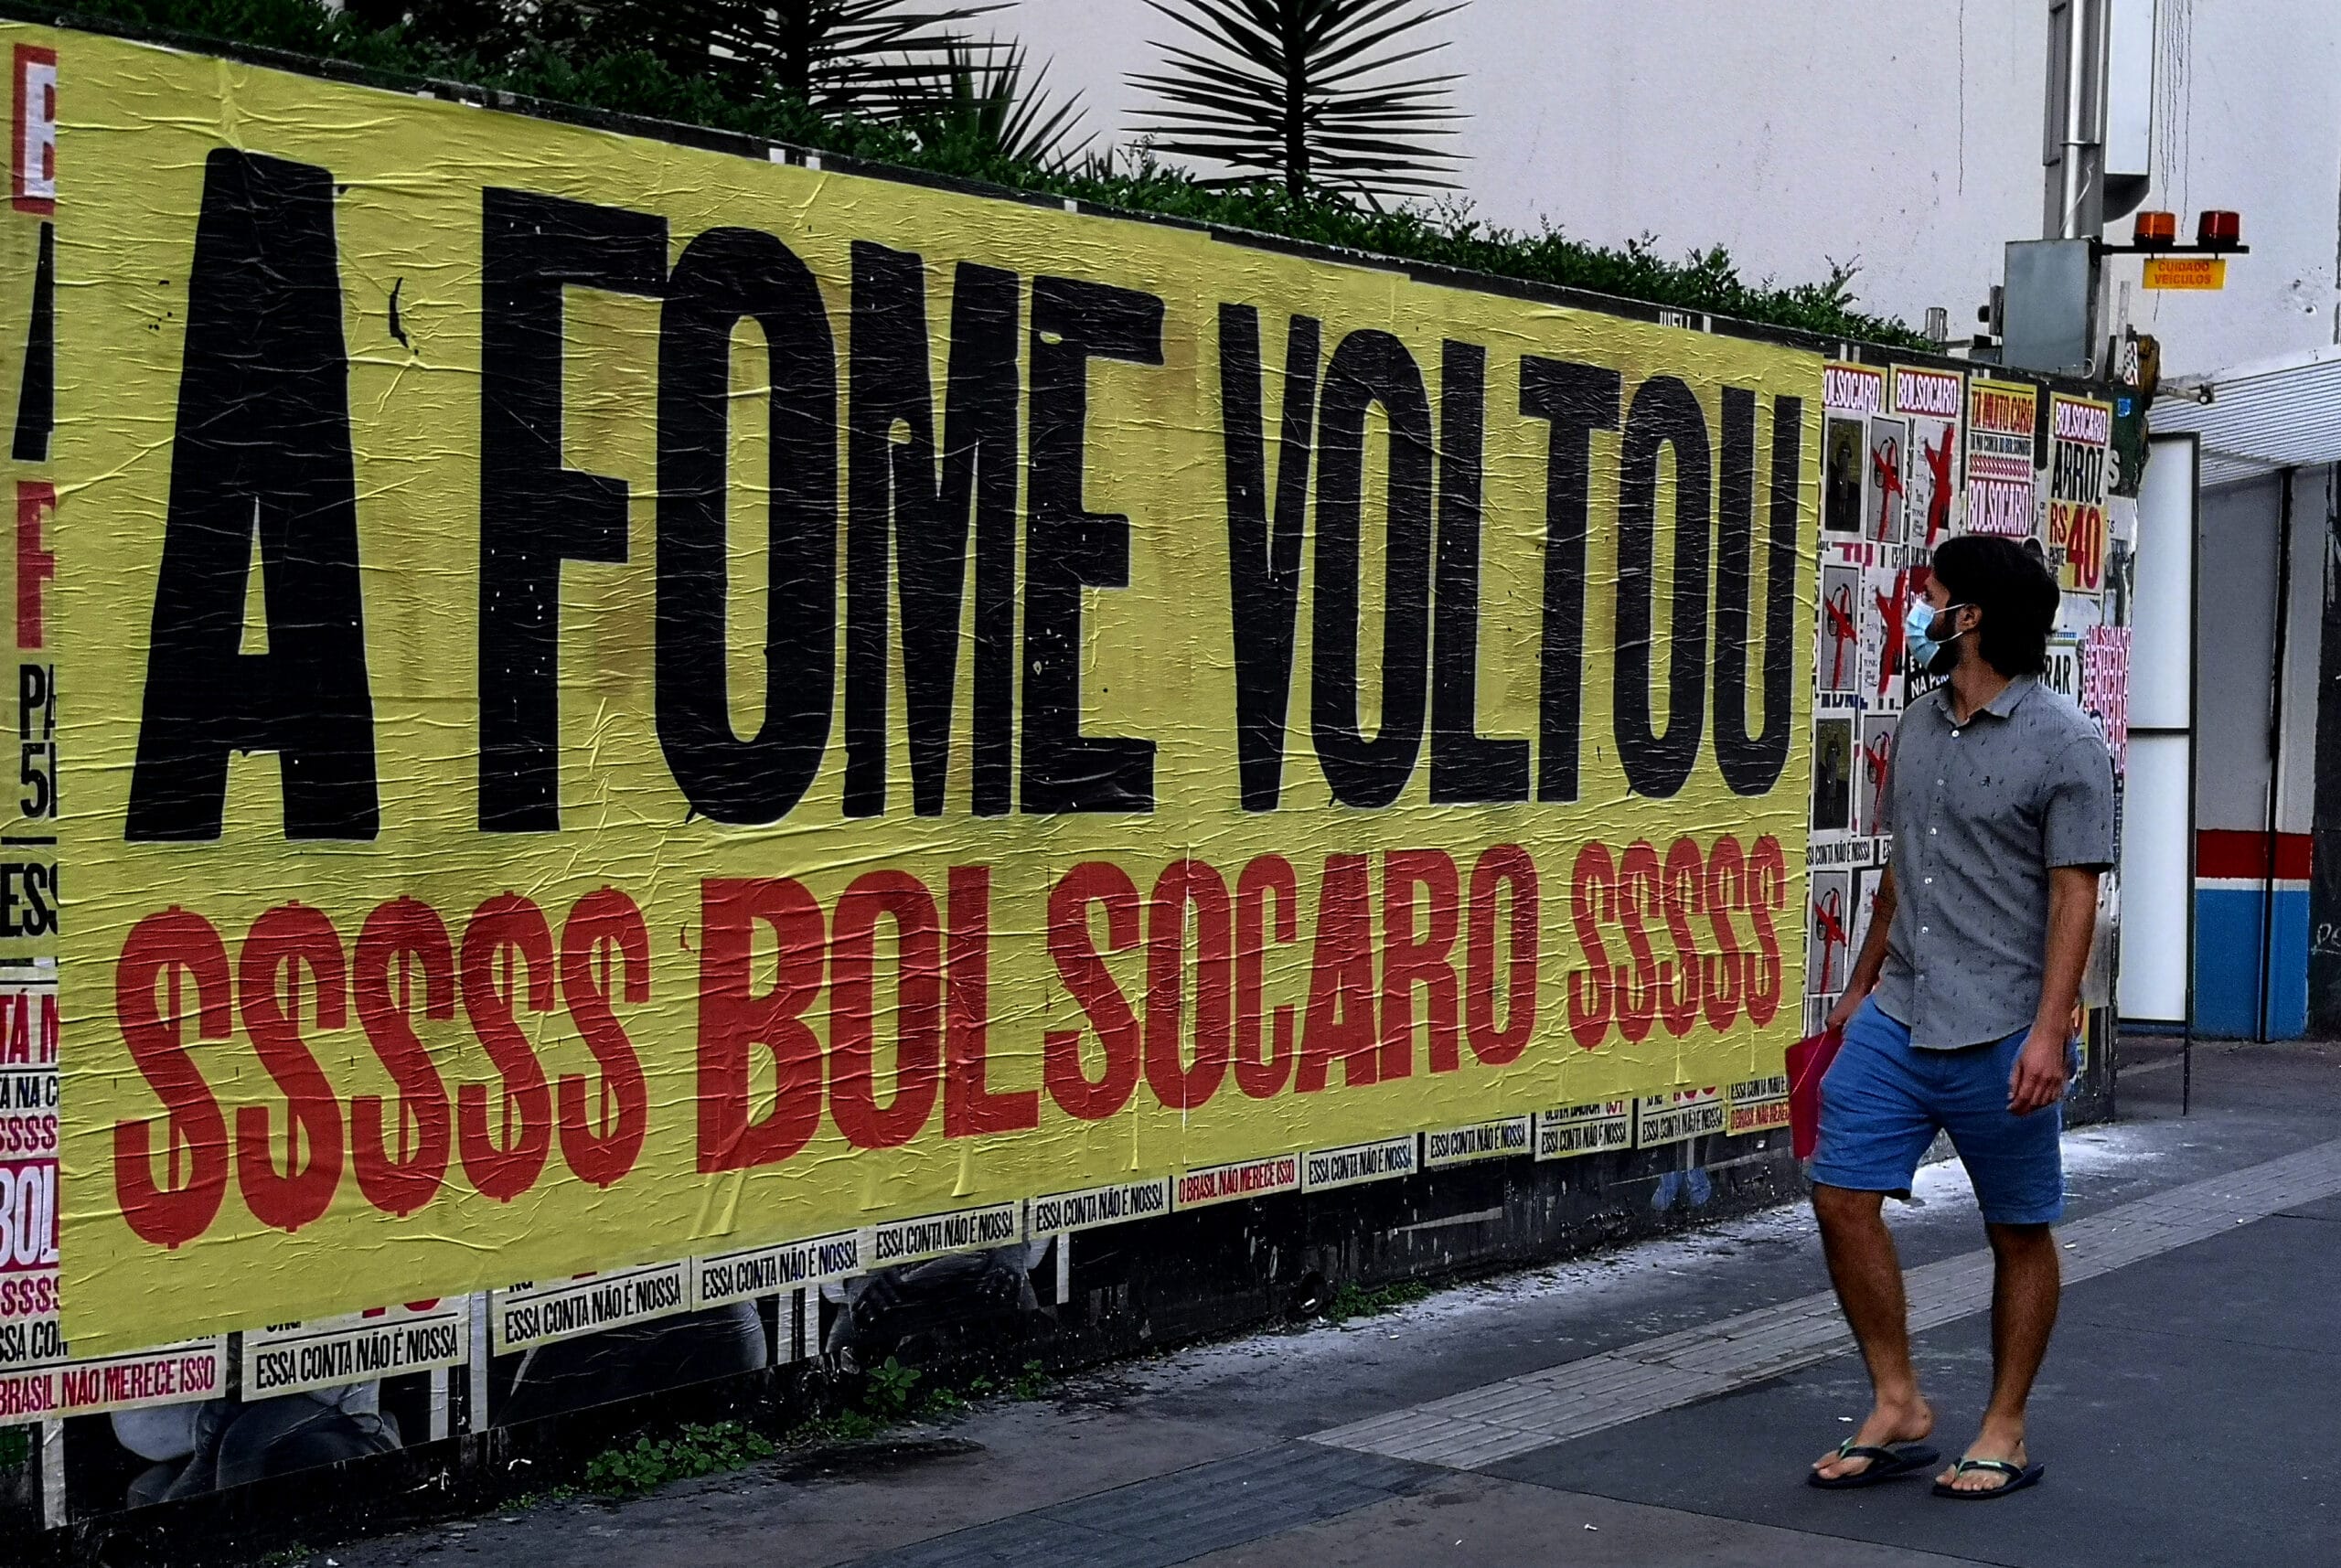 Cartaz colado na rua, com a frase: "A FOME VOLTOU!" abaixo: $$$$$ BOLSOCARO $$$$$. Um homem passa e observa o mural.